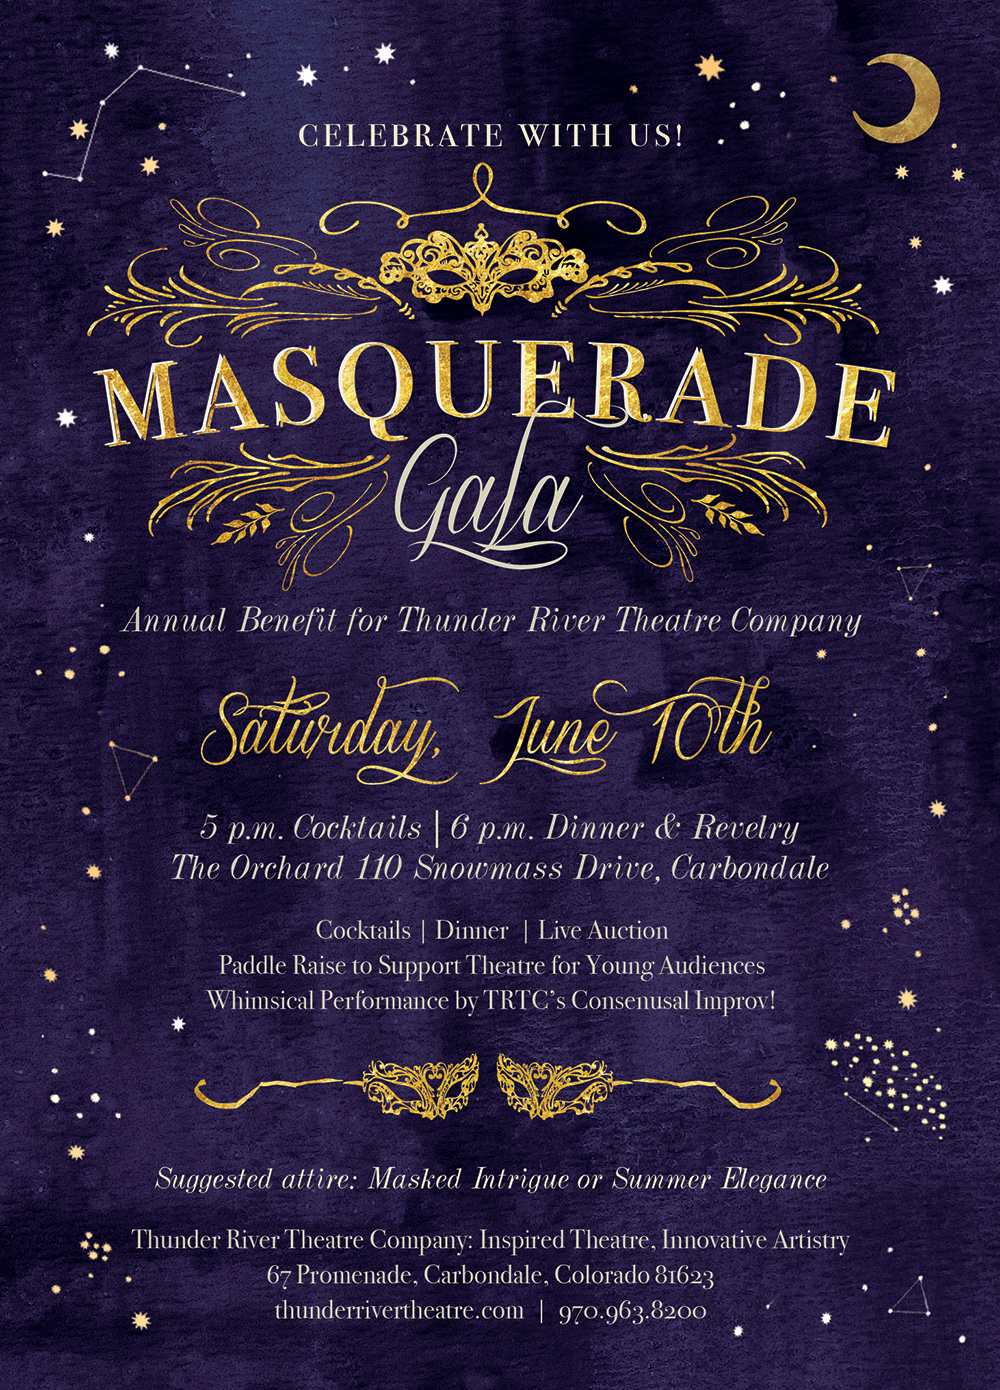 TRTC's Masquerade Gala